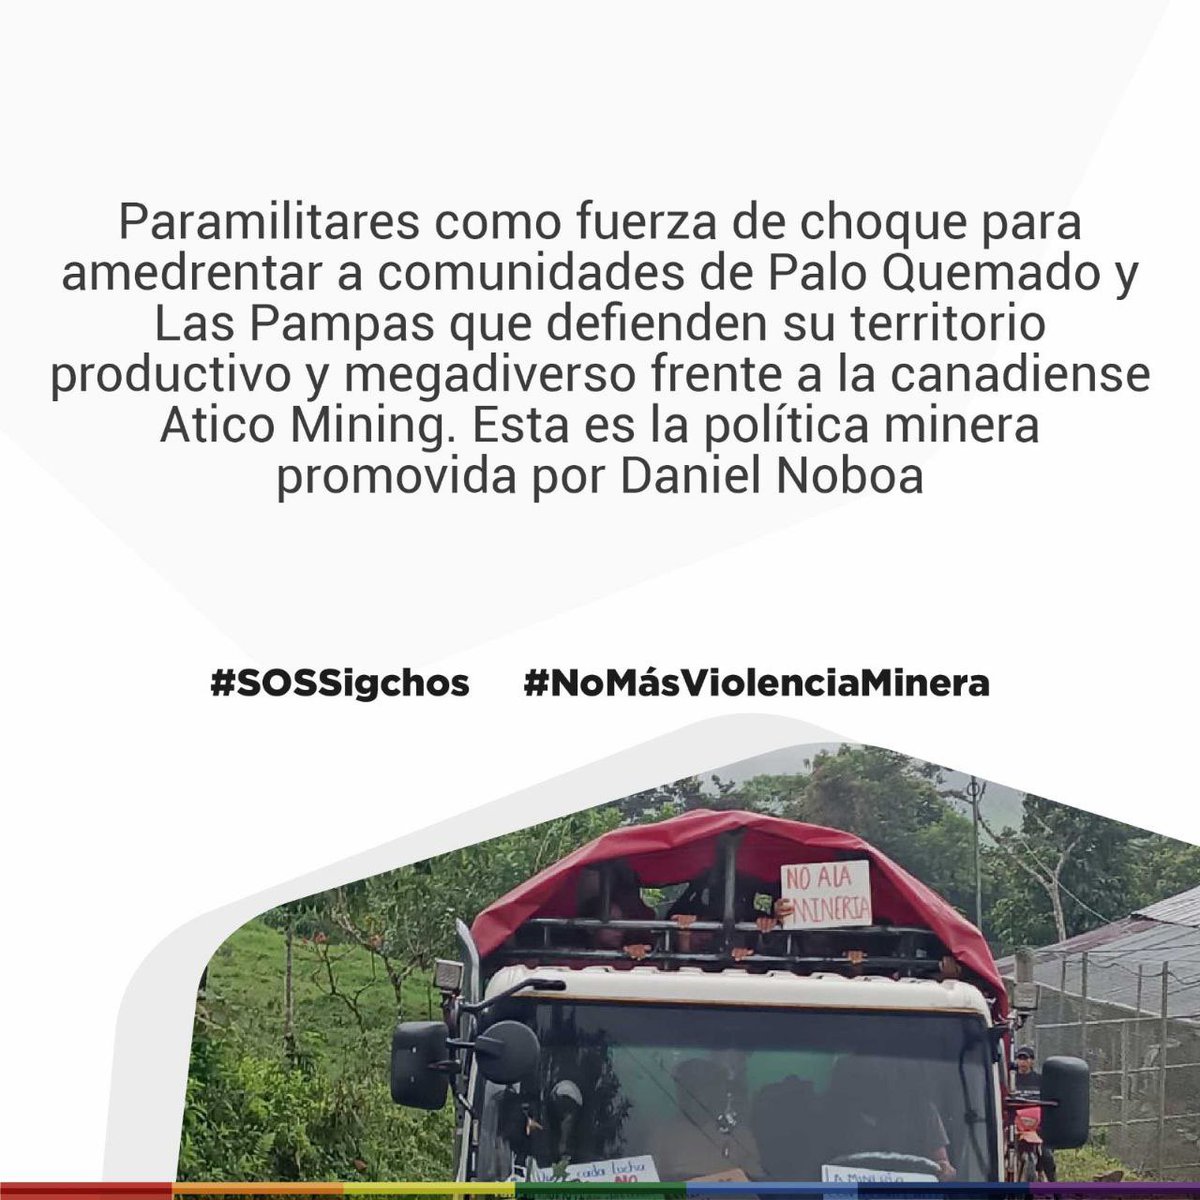 Paramilitares como fuerza de choque para amedrentar a comunidades de Palo Quemado y Las Pampas que defienden su territorio productivo y megadiverso frente a la canadiense Atico Mining. Esta es la política minera promovida por @DanielNoboaOk #SOSSigchos #NoMásViolenciaMinera…